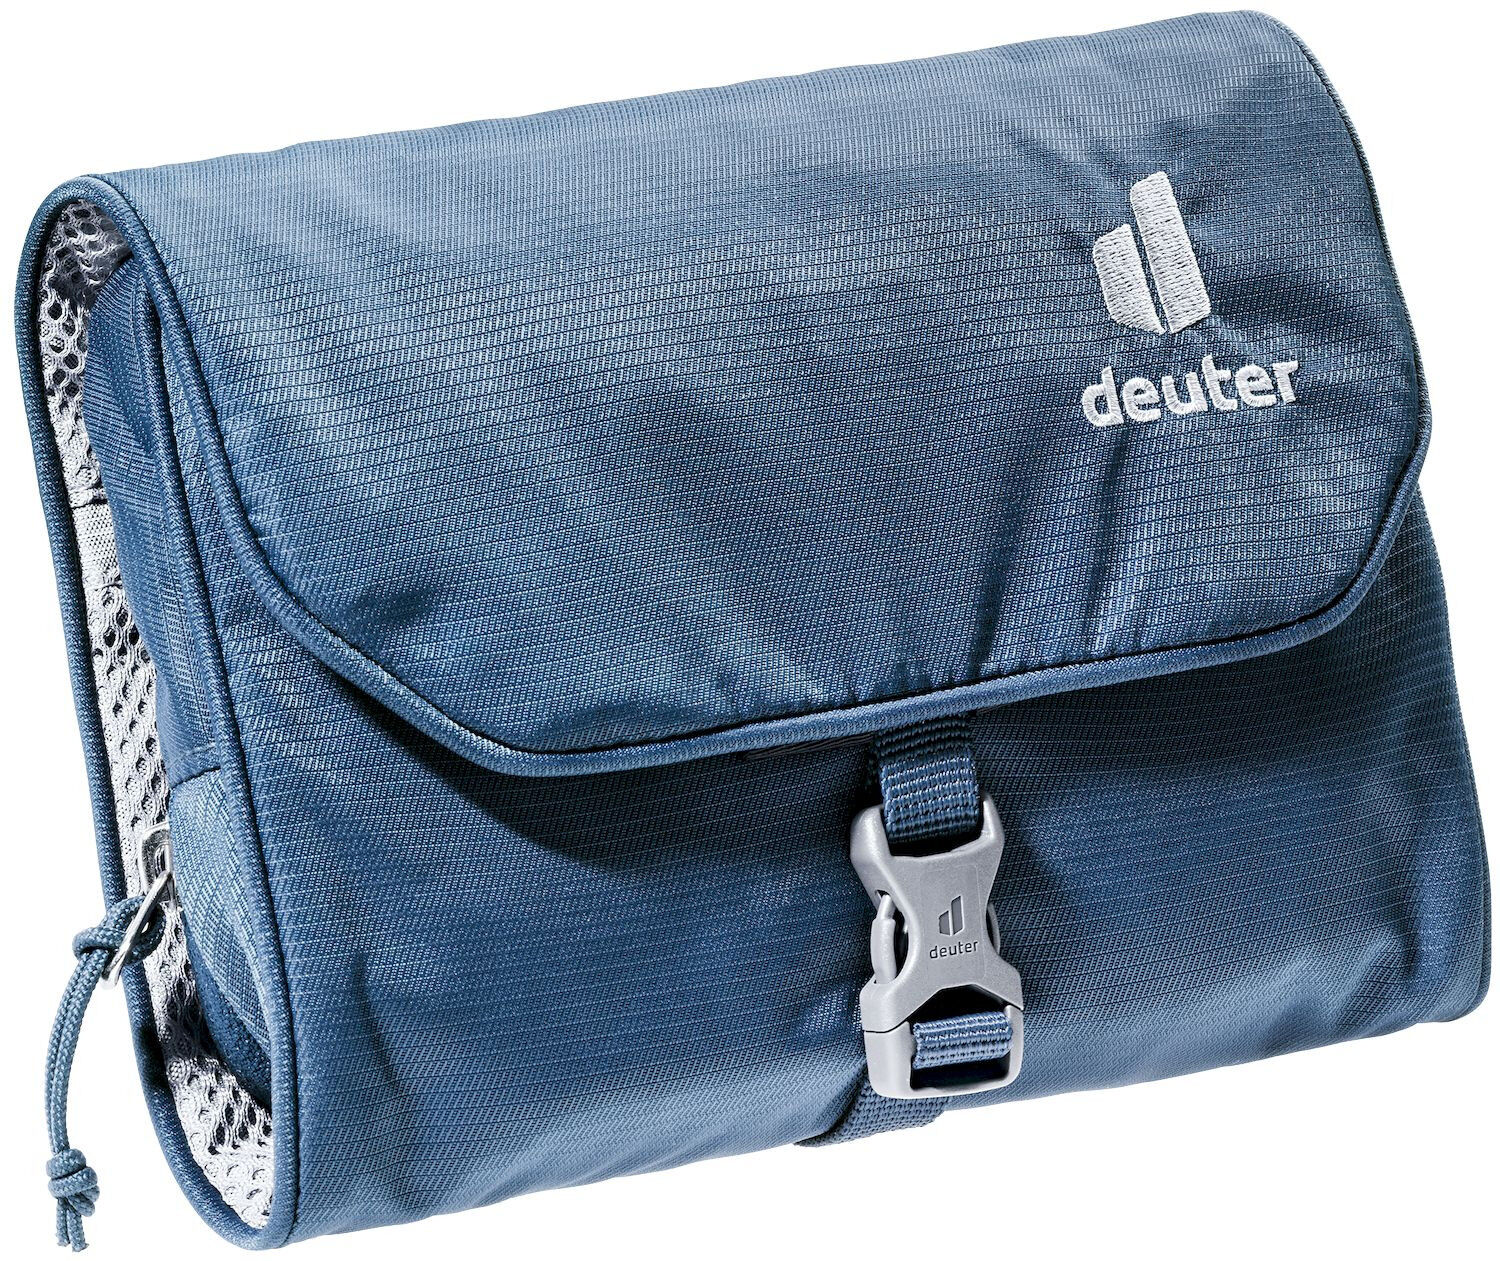 Deuter Wash Bag I - Wash bag